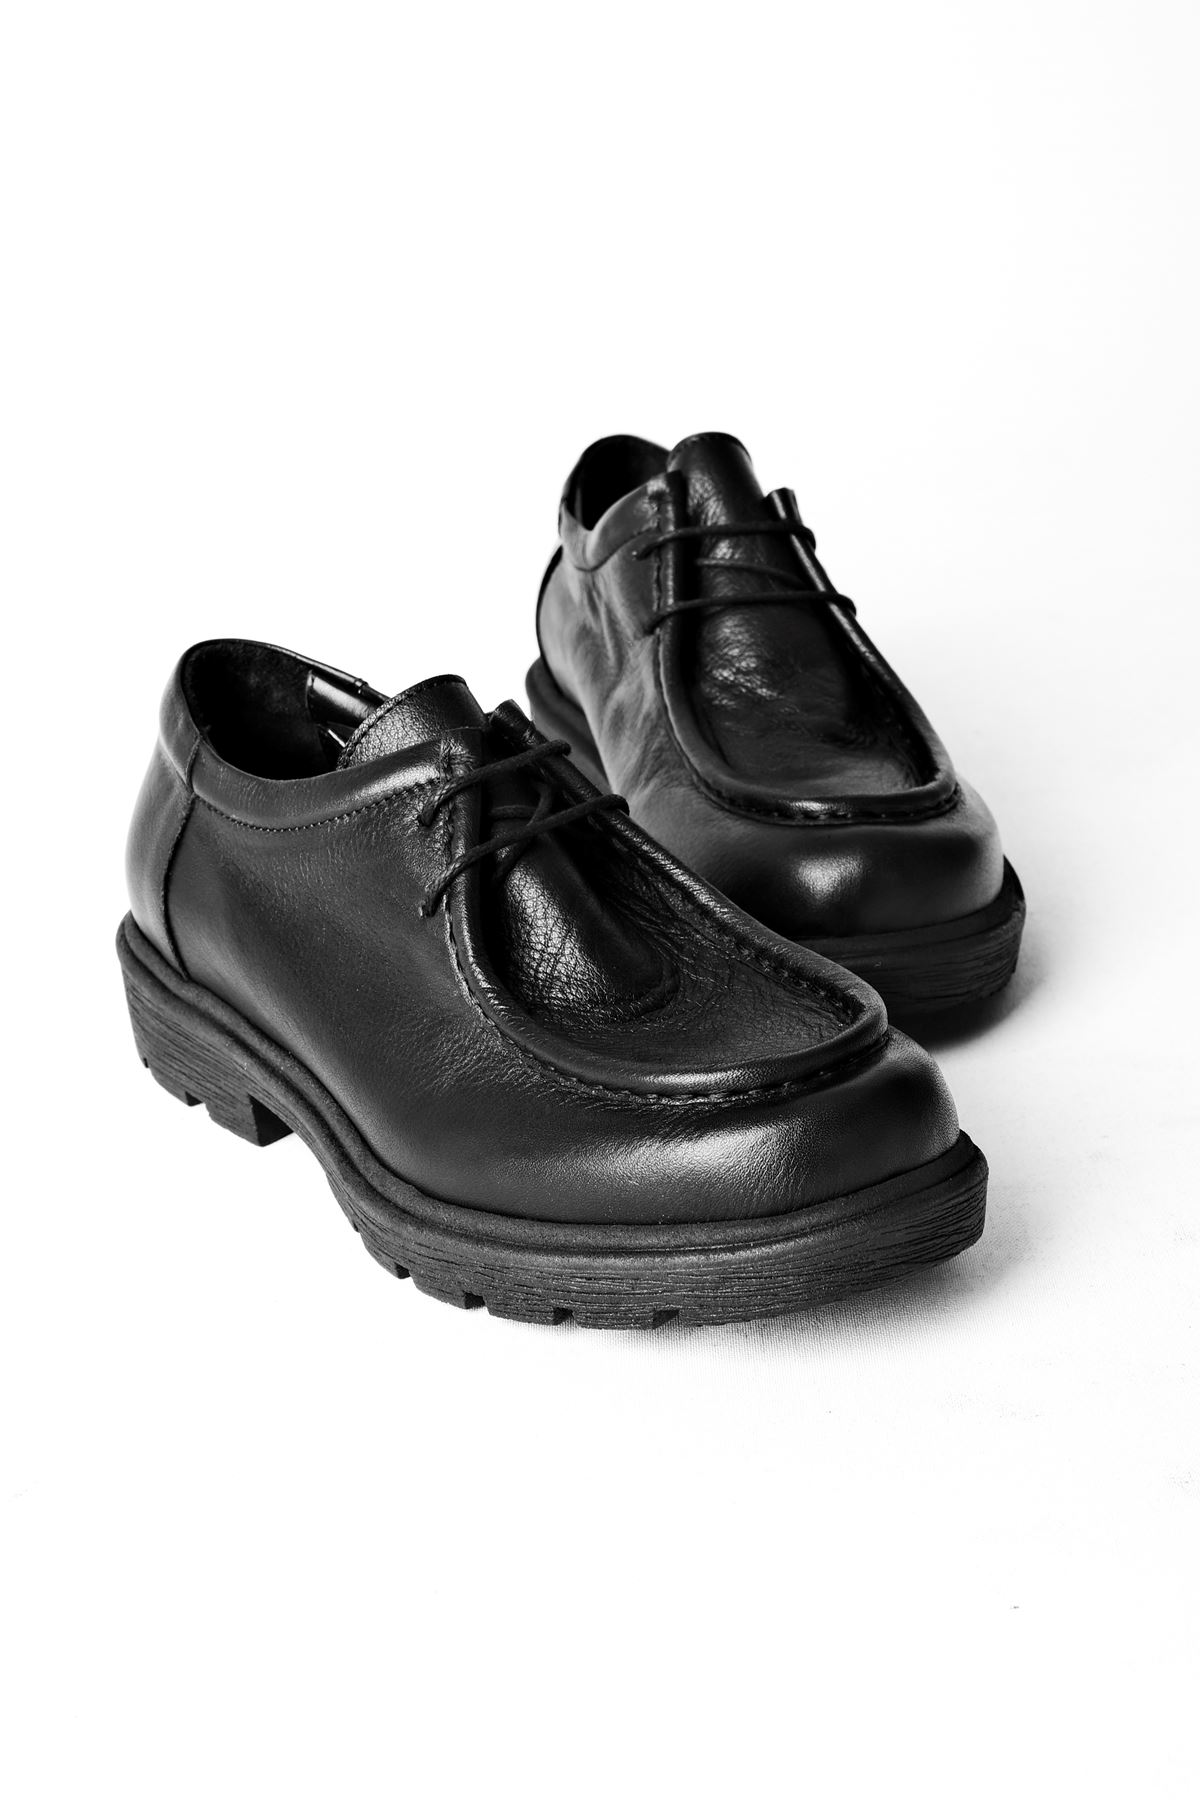 Mariel KAdın Hakiki Deri Dikiş Detaylı Bağcıklı Günlük Ayakkabı-siyah